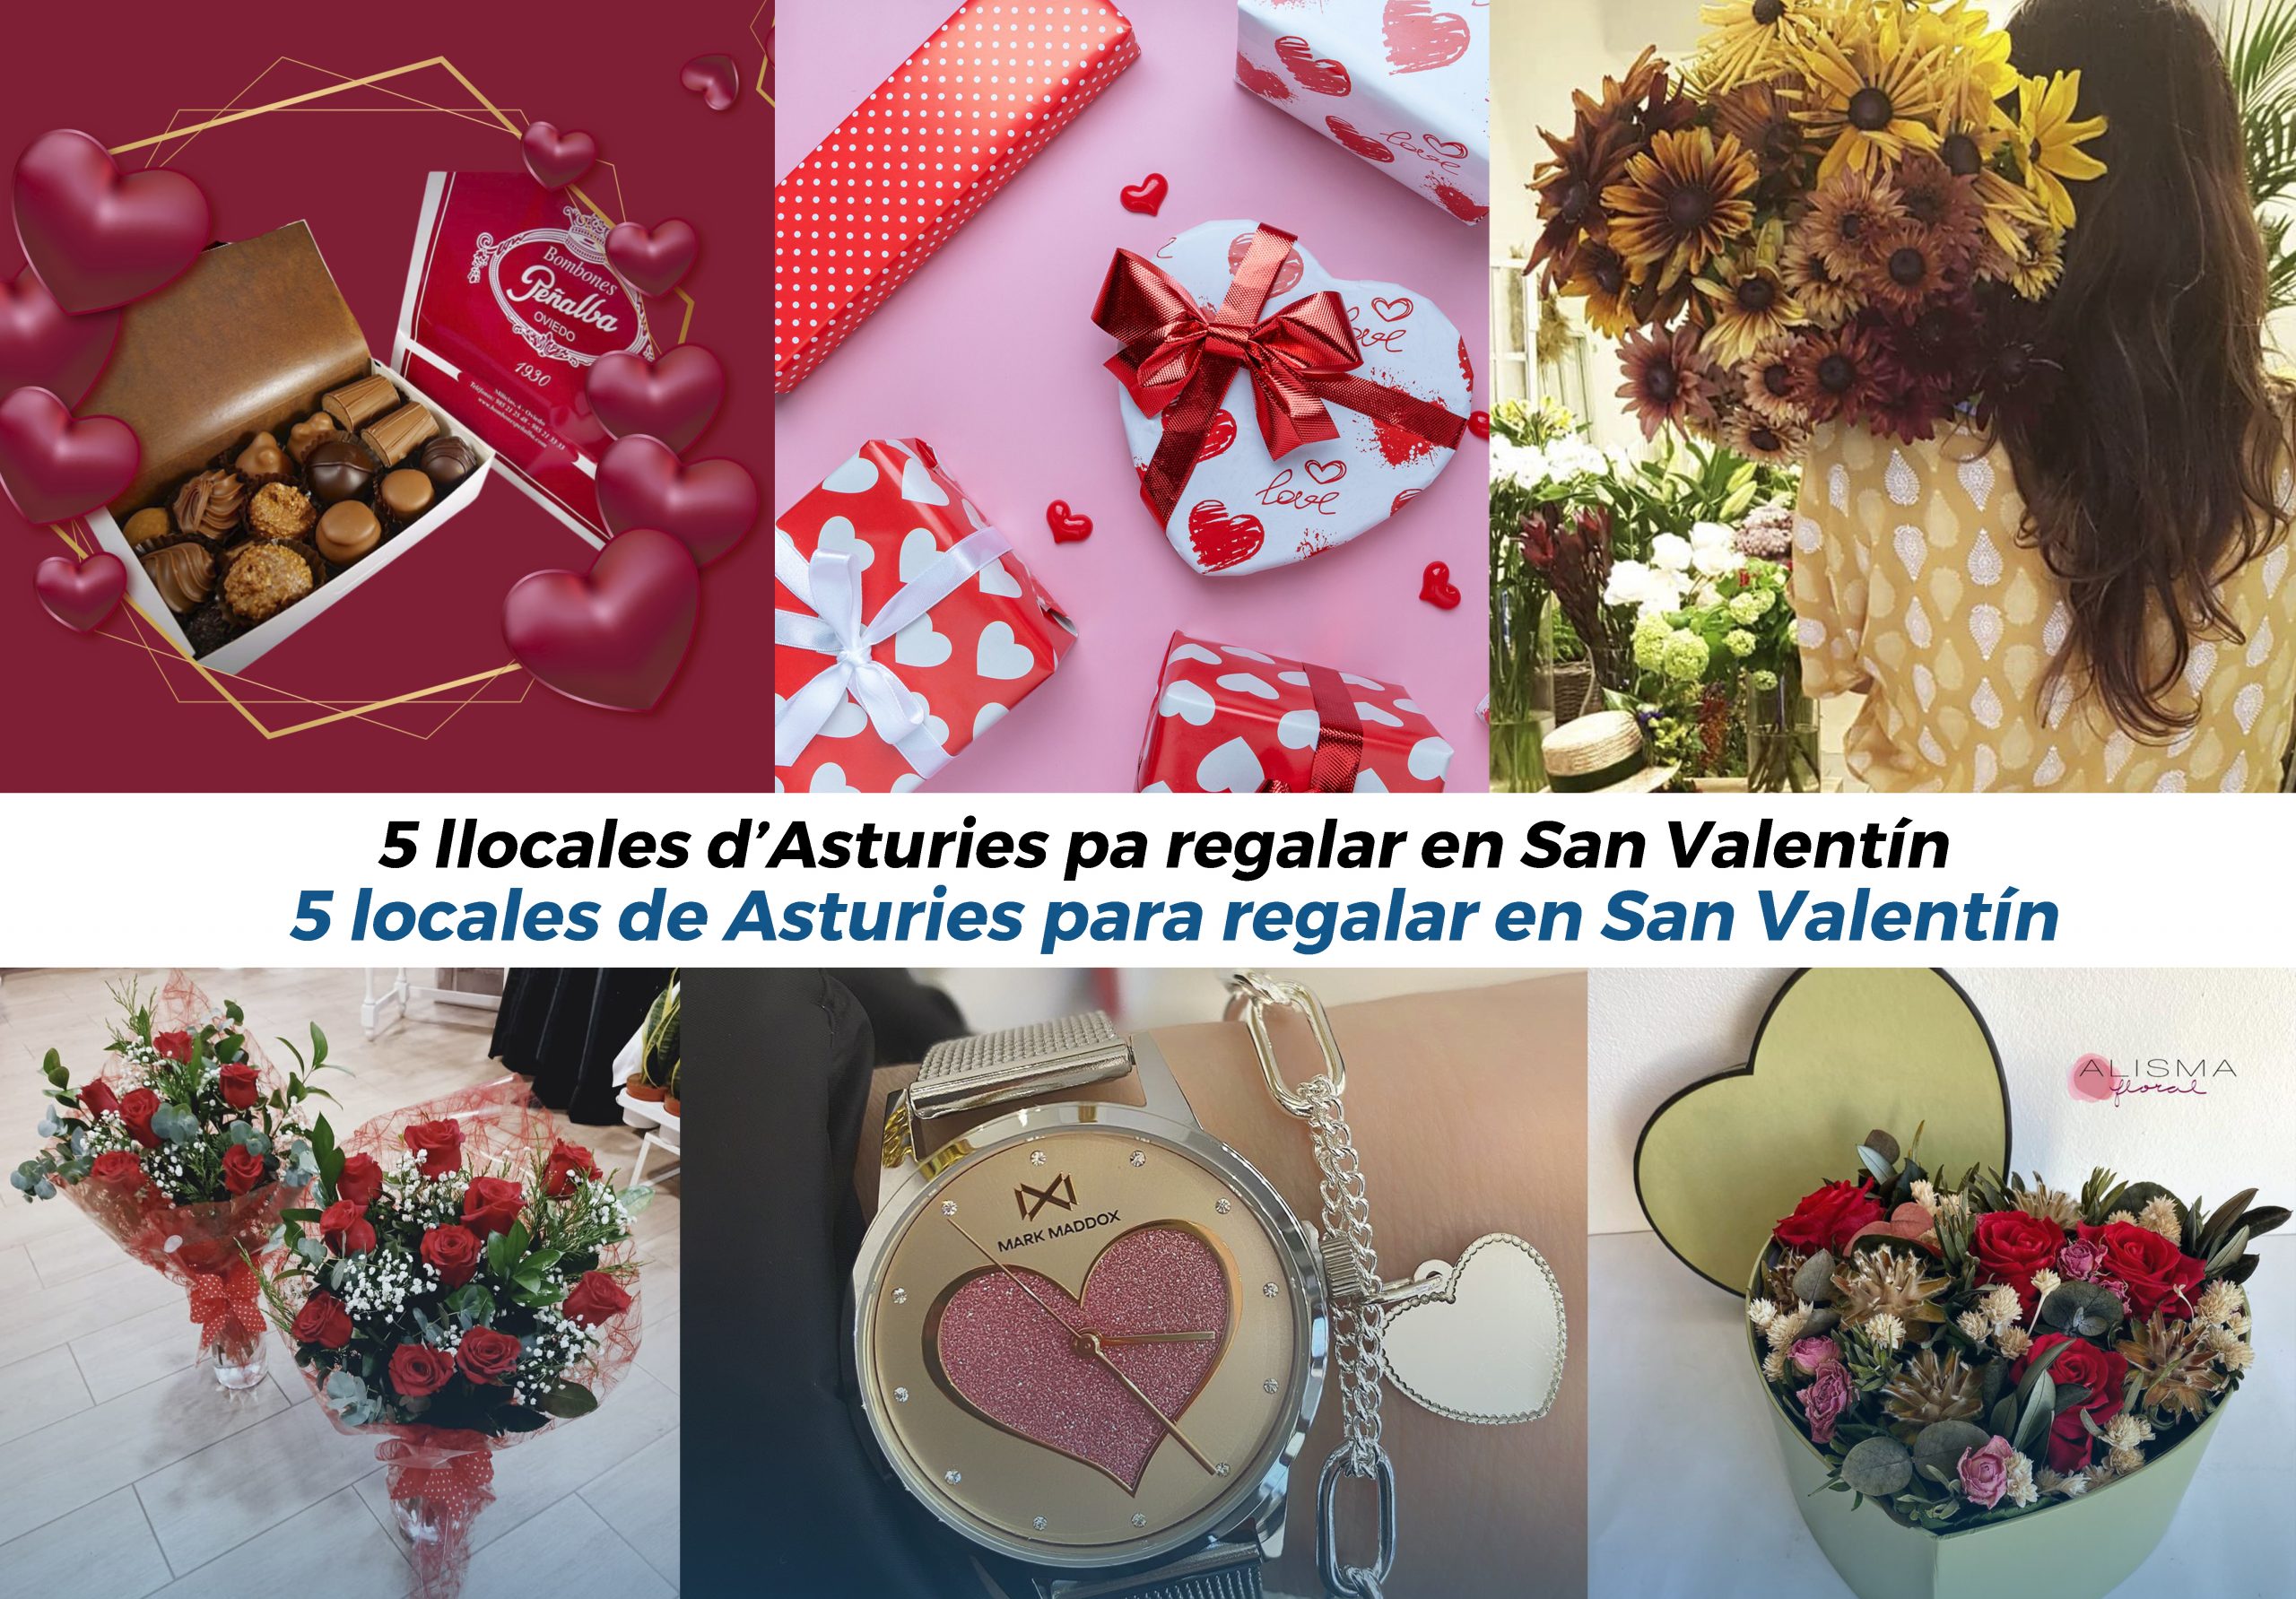 REGALOS SAN VALENTIN HOMBRE  Estos son los mejores regalos de San Valentín  para hombre en Asturias